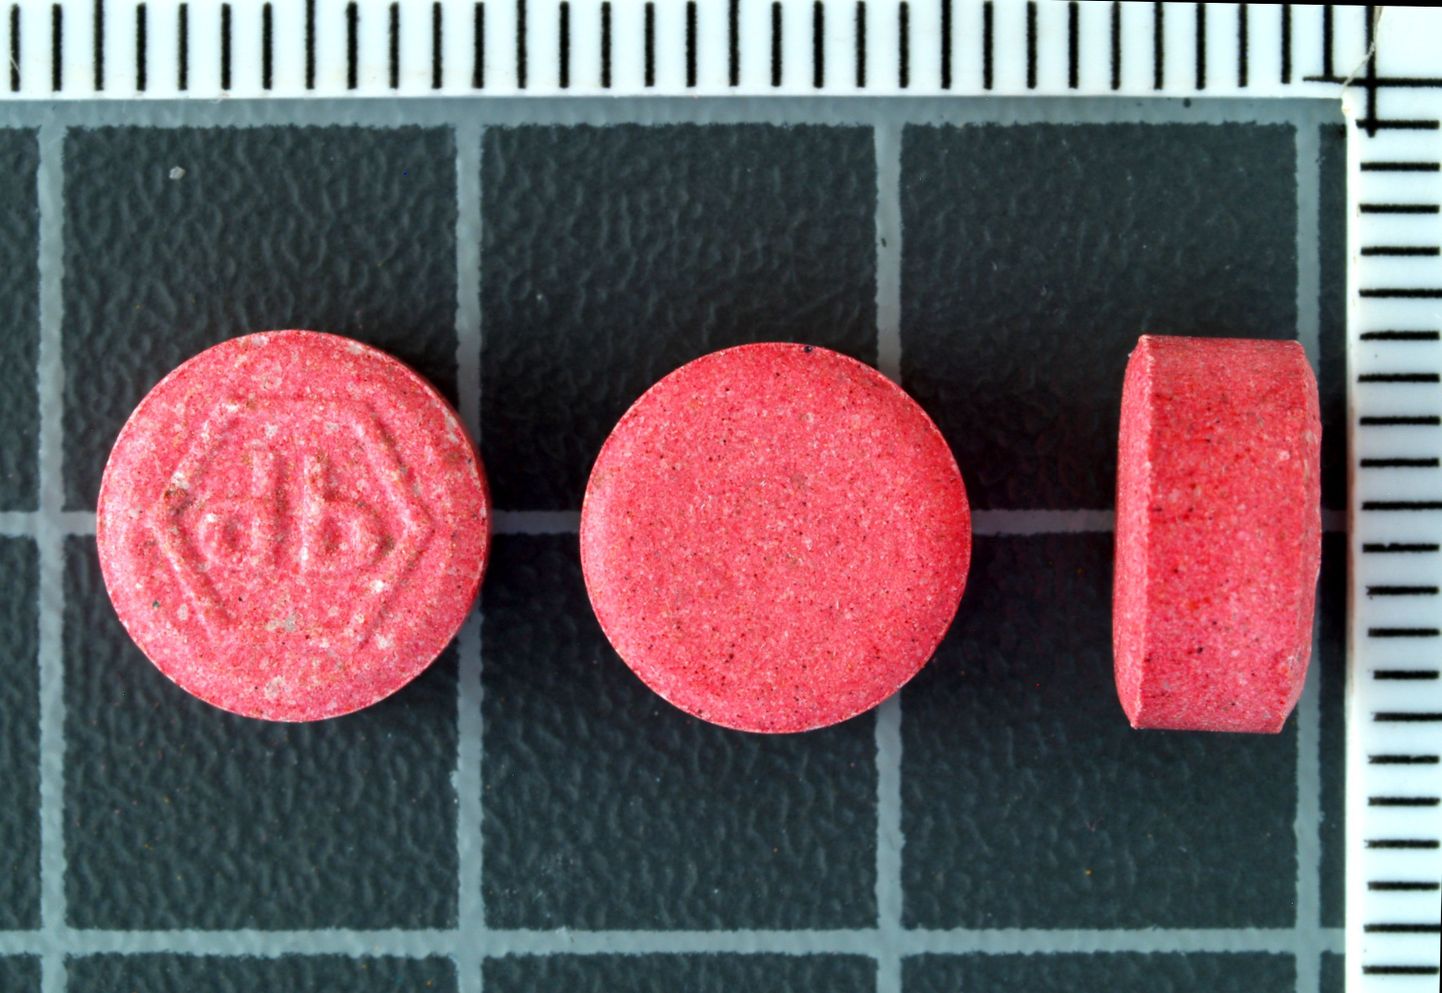 Tablette on olnud erinevat värvi ja neid on ilmnenud mitmes kohas Eestis. Värvuselt on neid nii punaseid kui ka siniseid. Osa tablette sisaldavad narkootilist ainet MDMA, aga osa hoopis keemiatööstuse jääkprodukte.